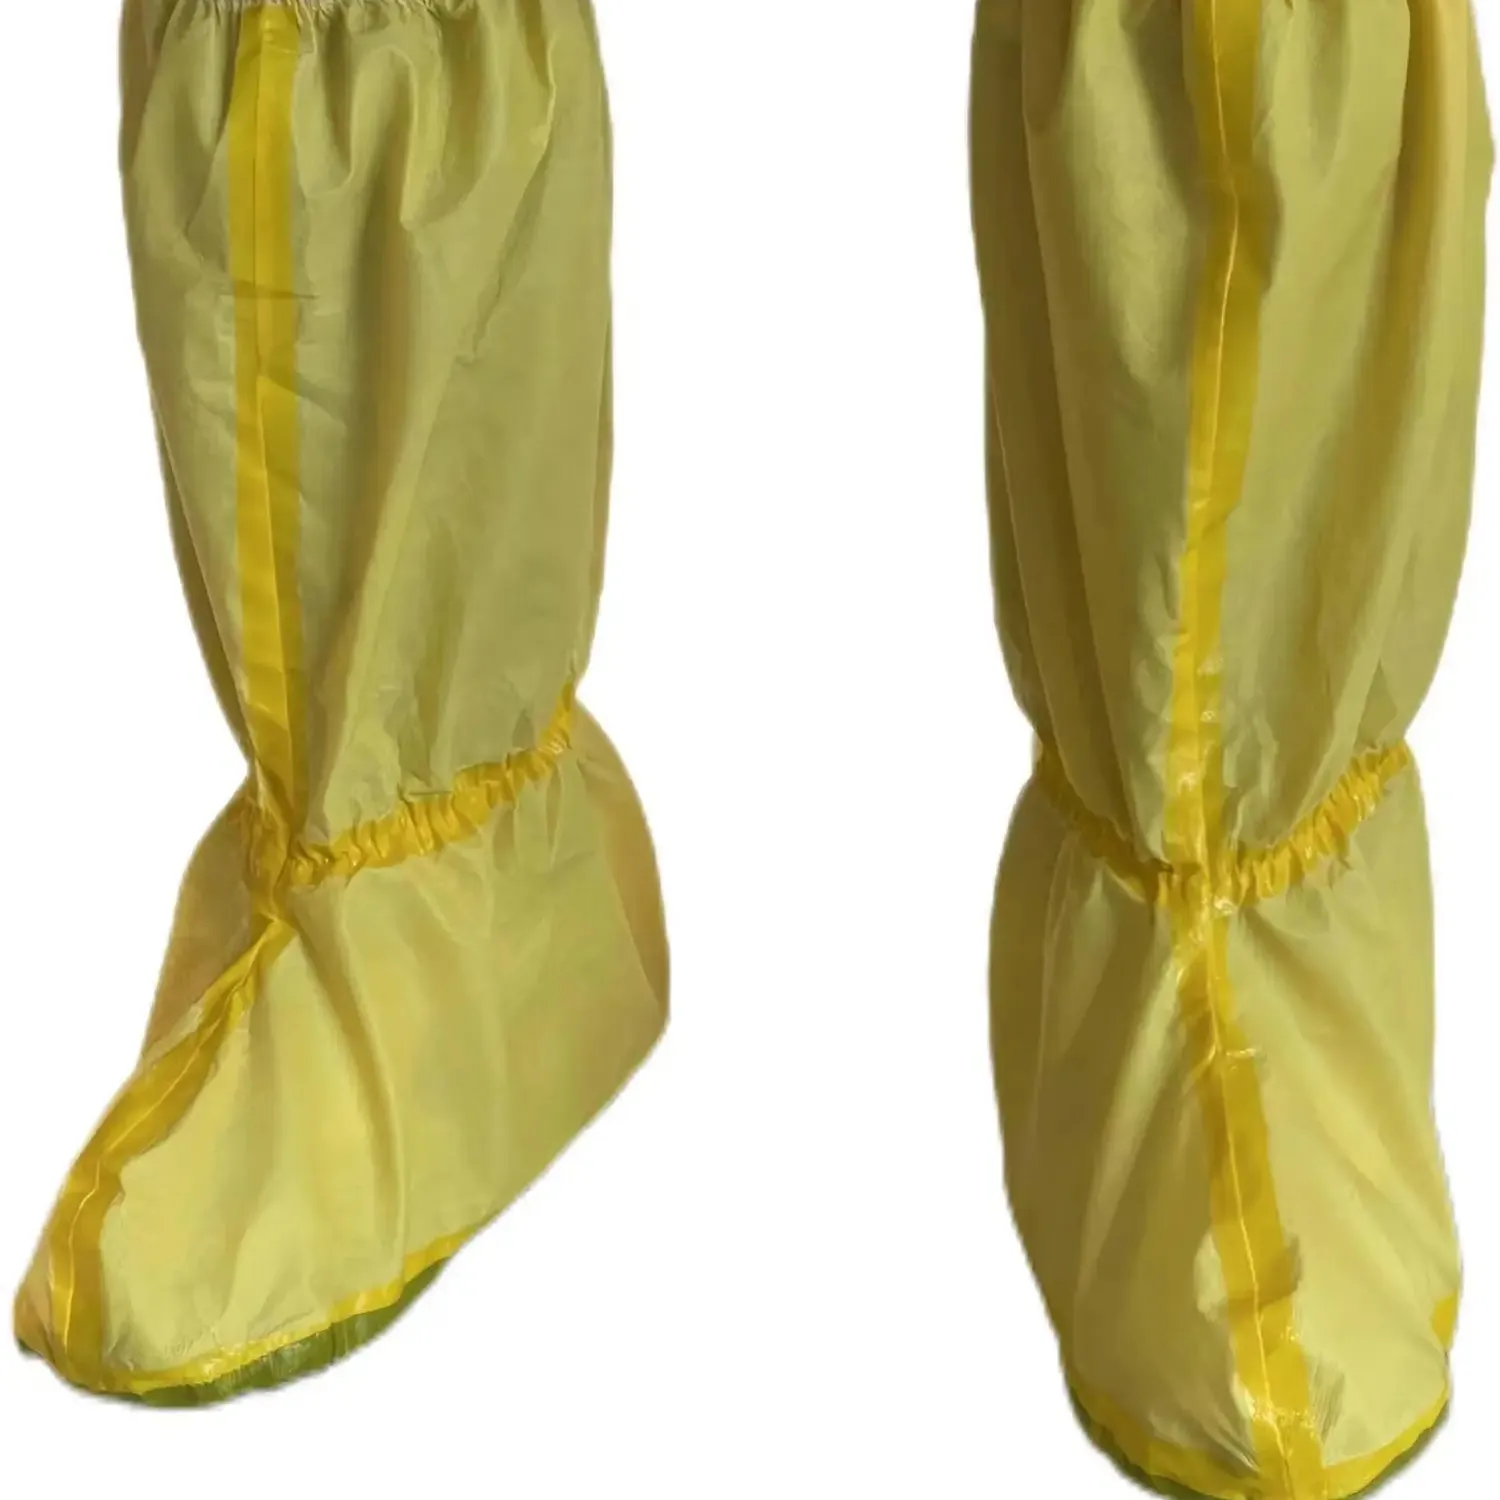 化学保護ブーツカバー使い捨てロングパターンブーツカバー不織布防水滑り止めPPCPEブーツカバー